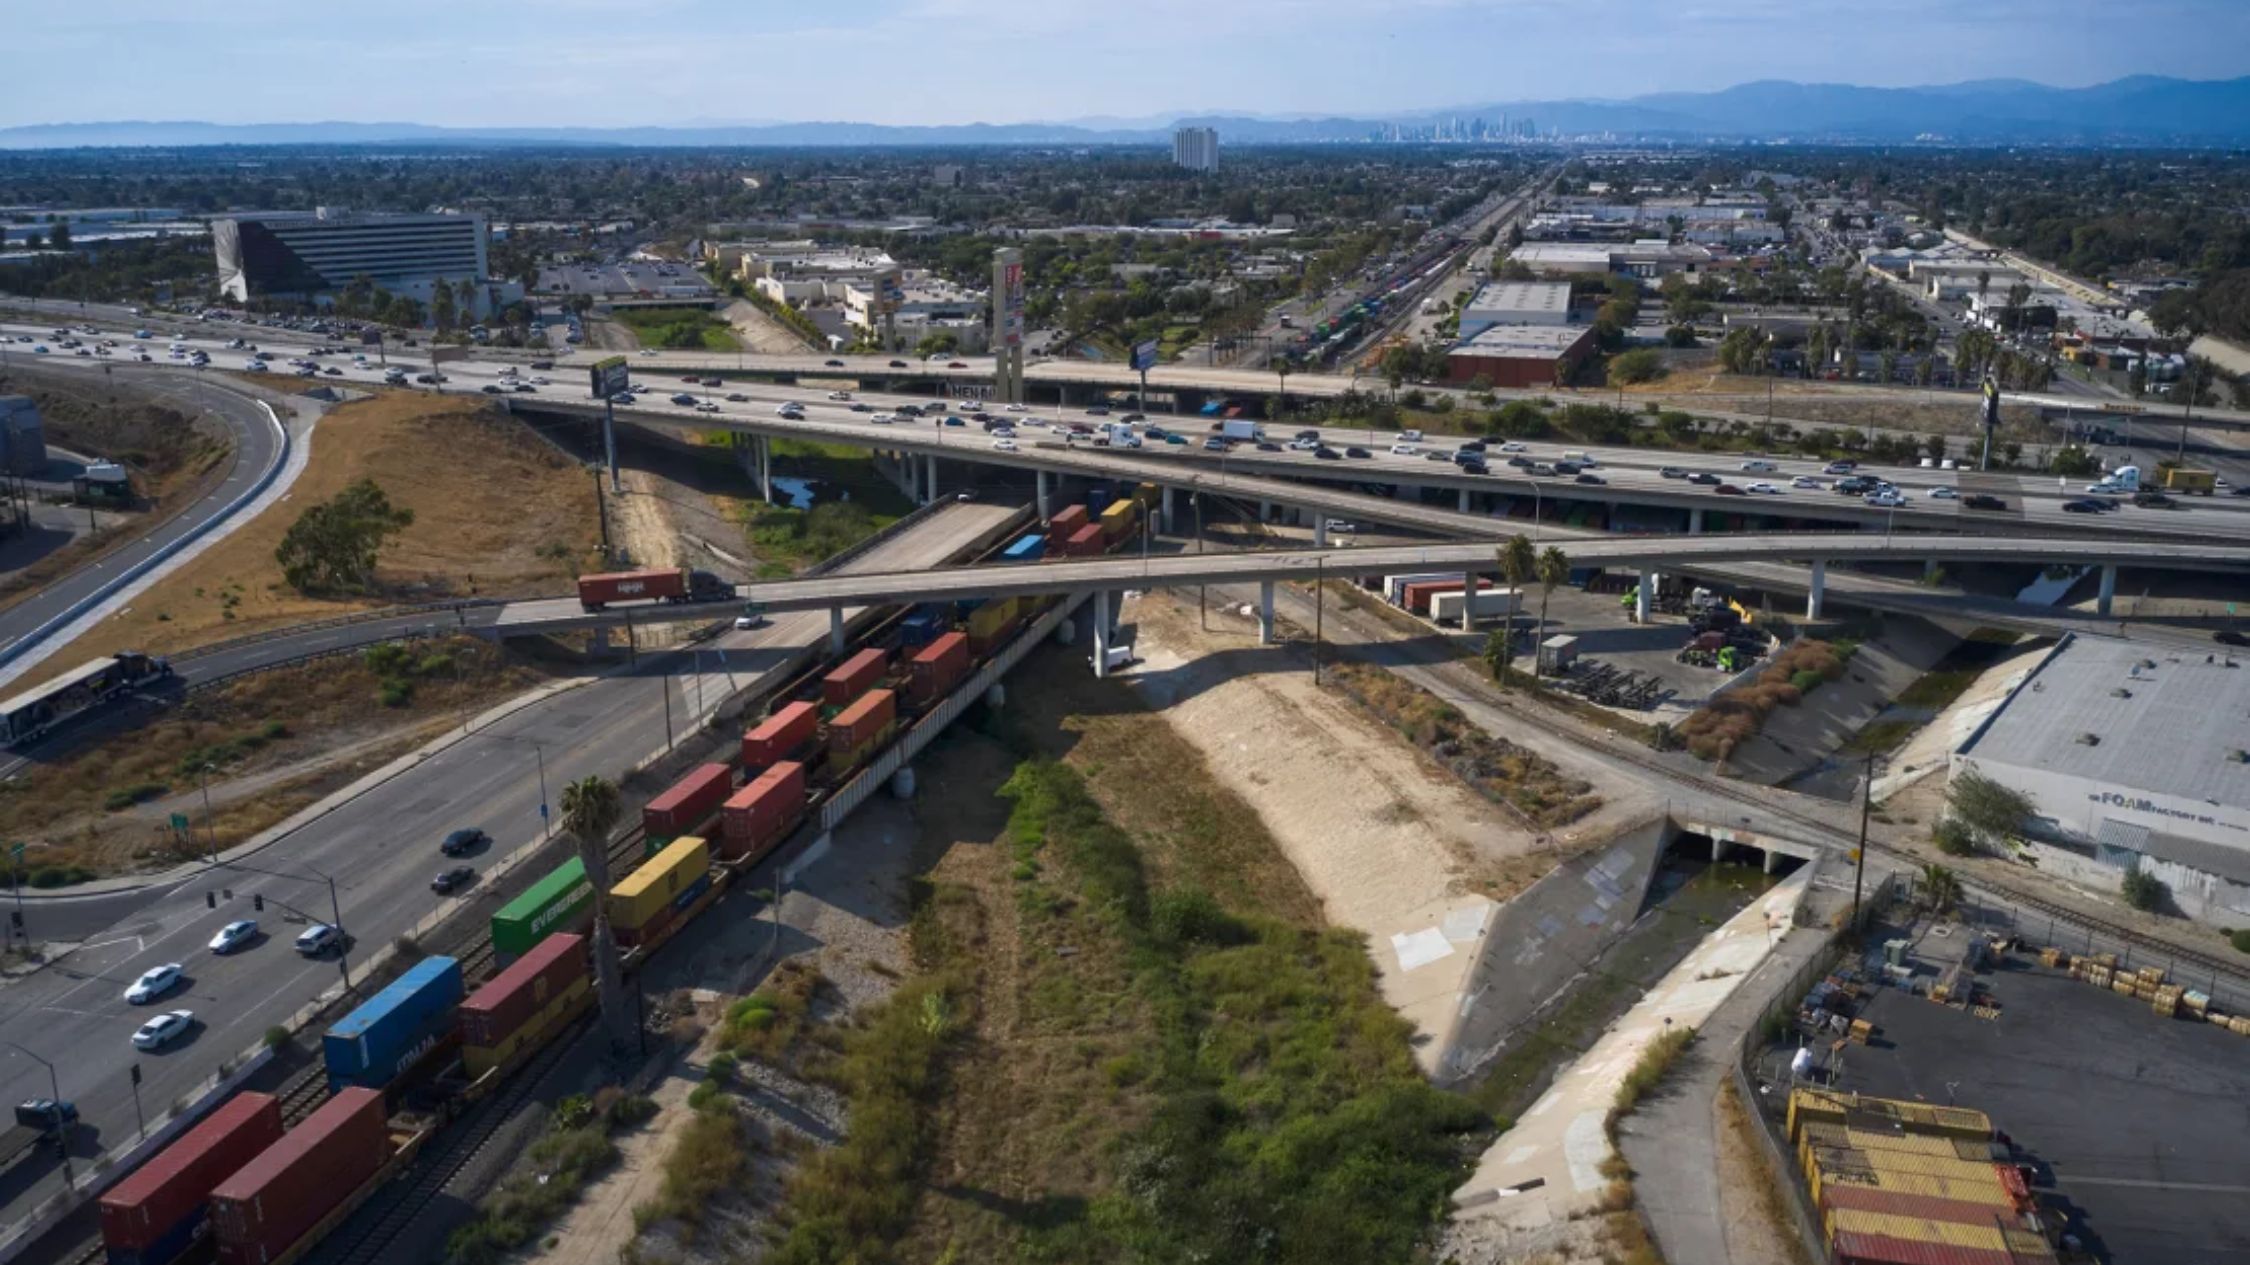 Una larga fila de contenedores de carga pasa bajo una carretera en Compton, California, EE.UU., el martes 2 de agosto de 2022. (Crédito: Bing Guan/Bloomberg/Getty Images)